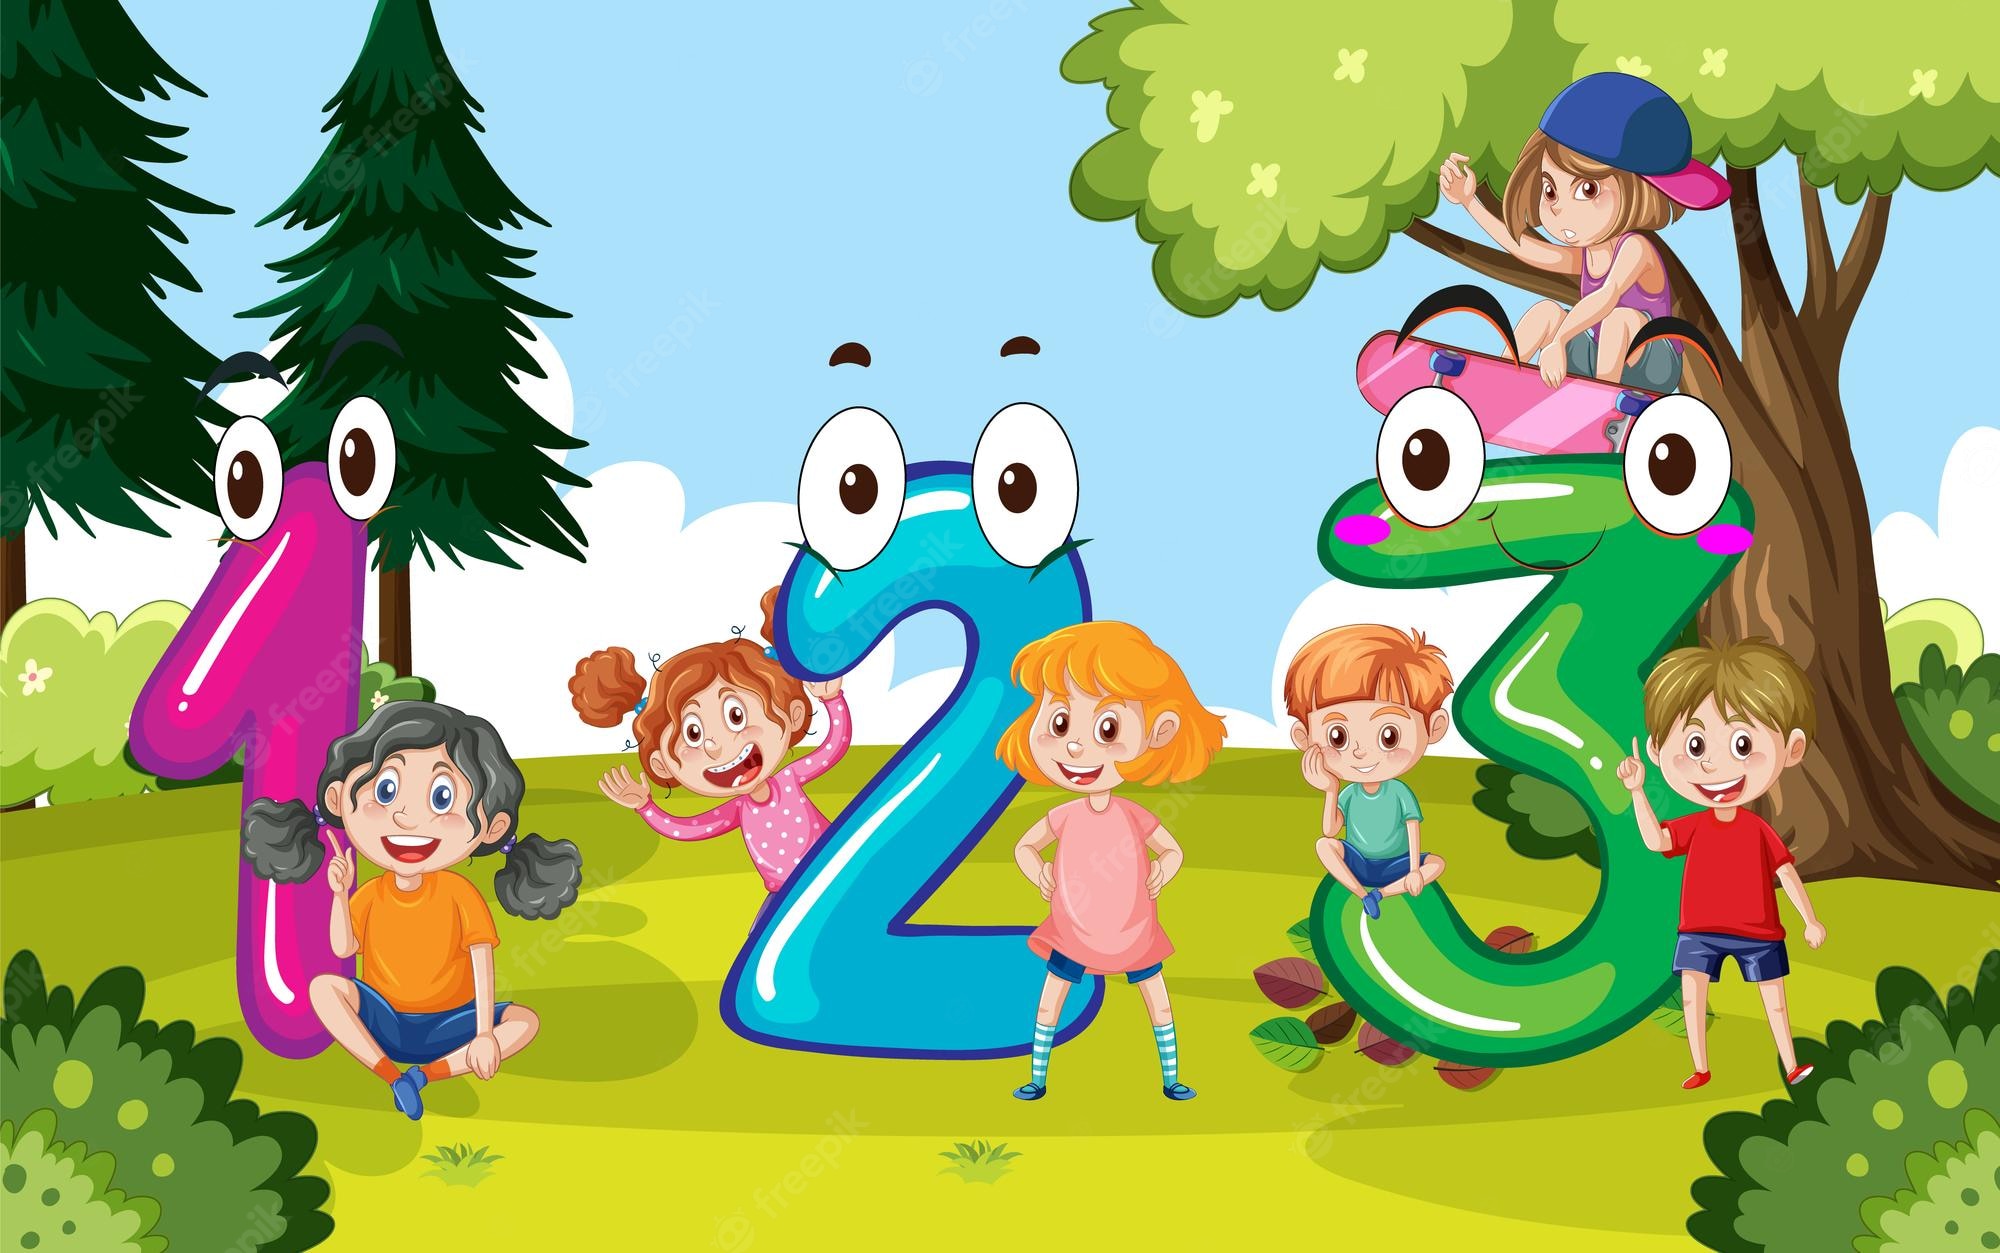 Premium Vector. Children cartoon character with numbers